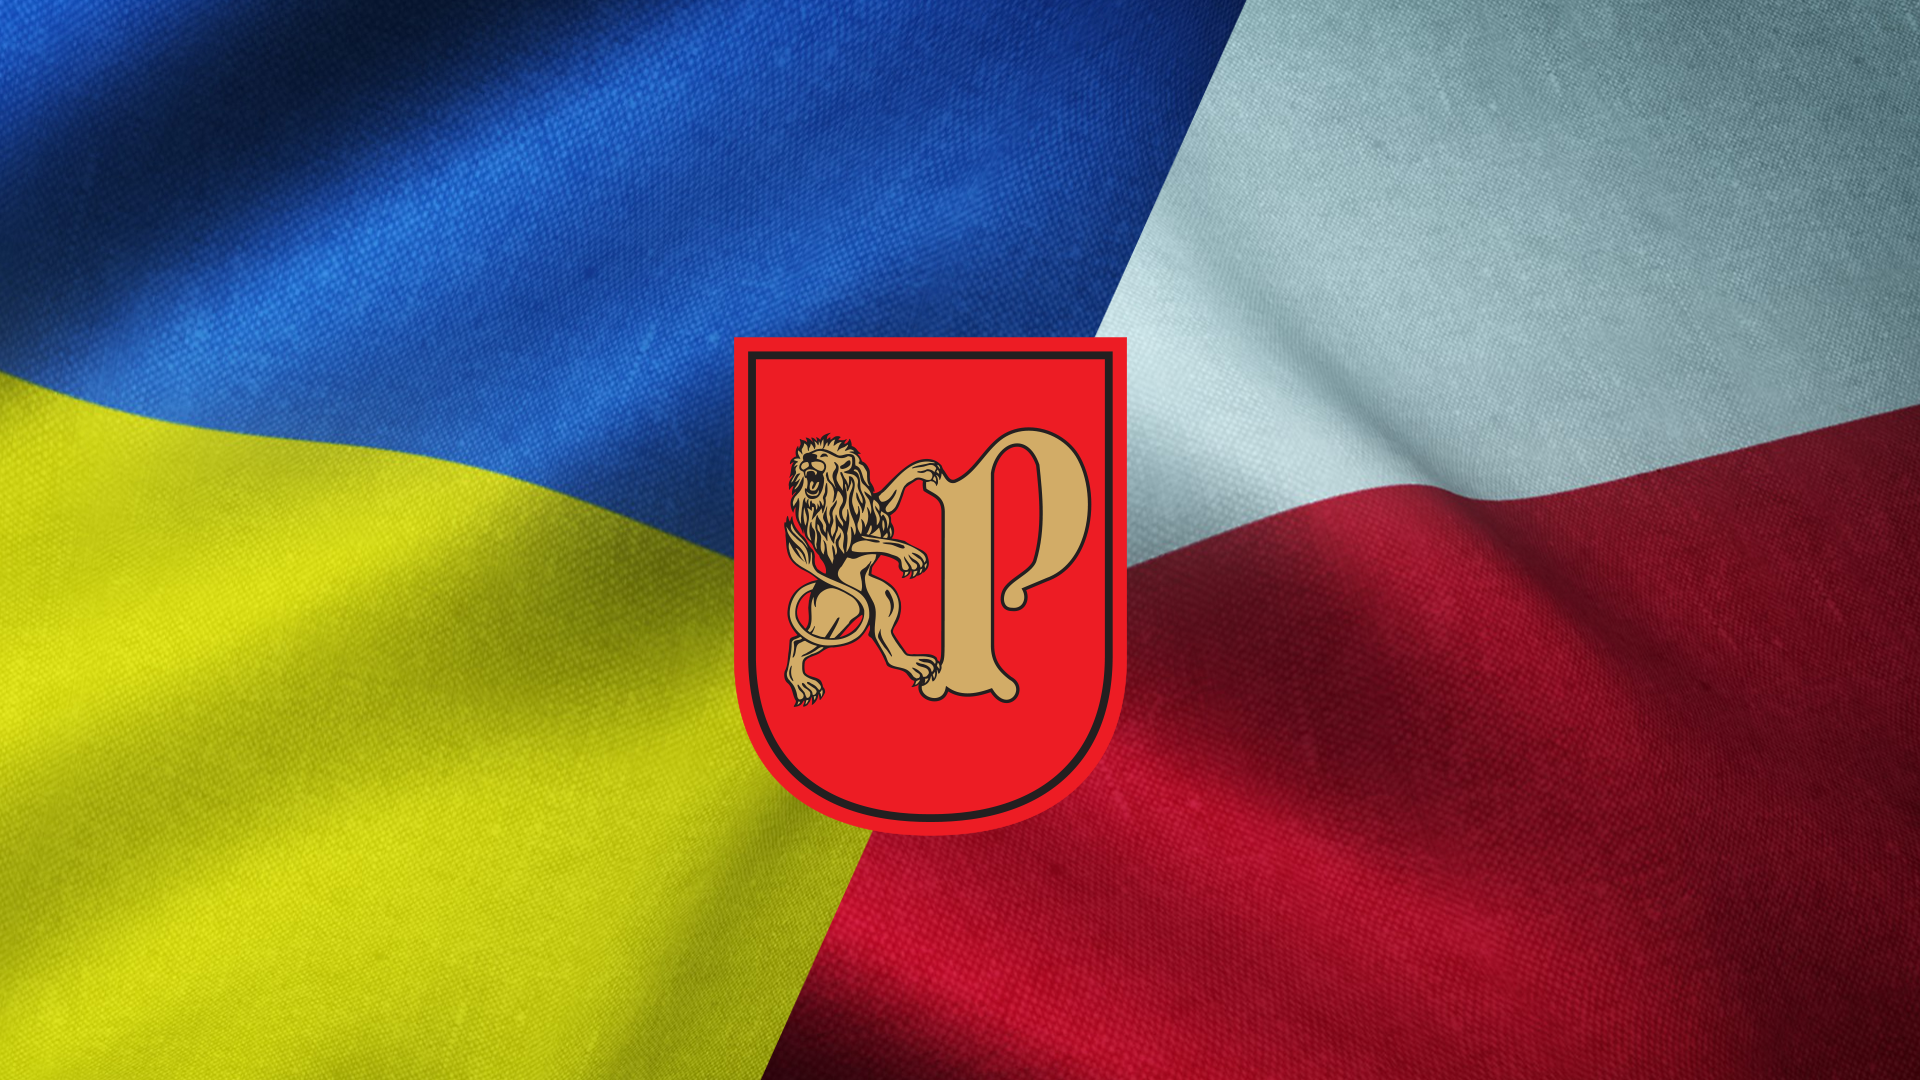 Poszukiwani wolontariusze do nauki j. polskiego dla osób z Ukrainy